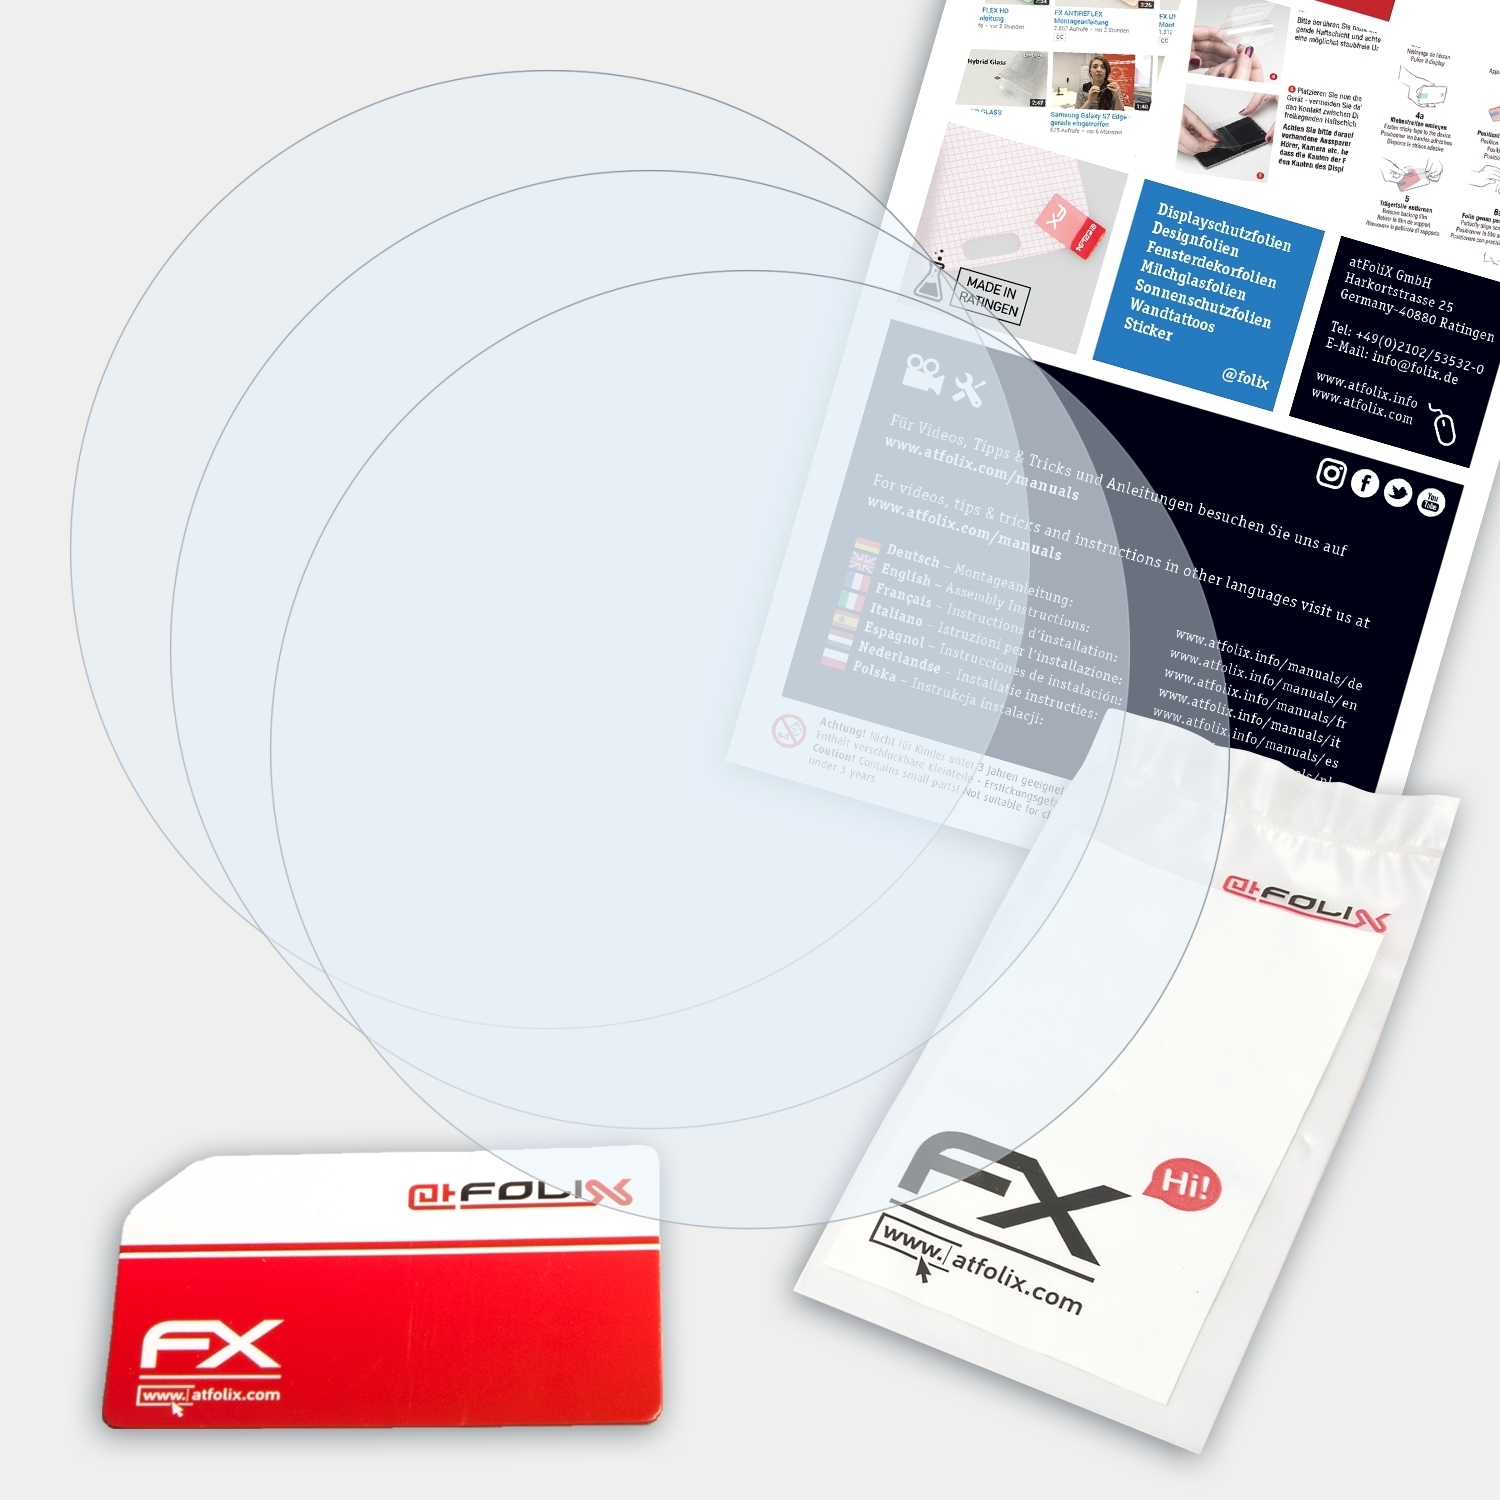 ATFOLIX 3x FX-Clear (47 Displayschutz(für D2 mm)) Delta Garmin